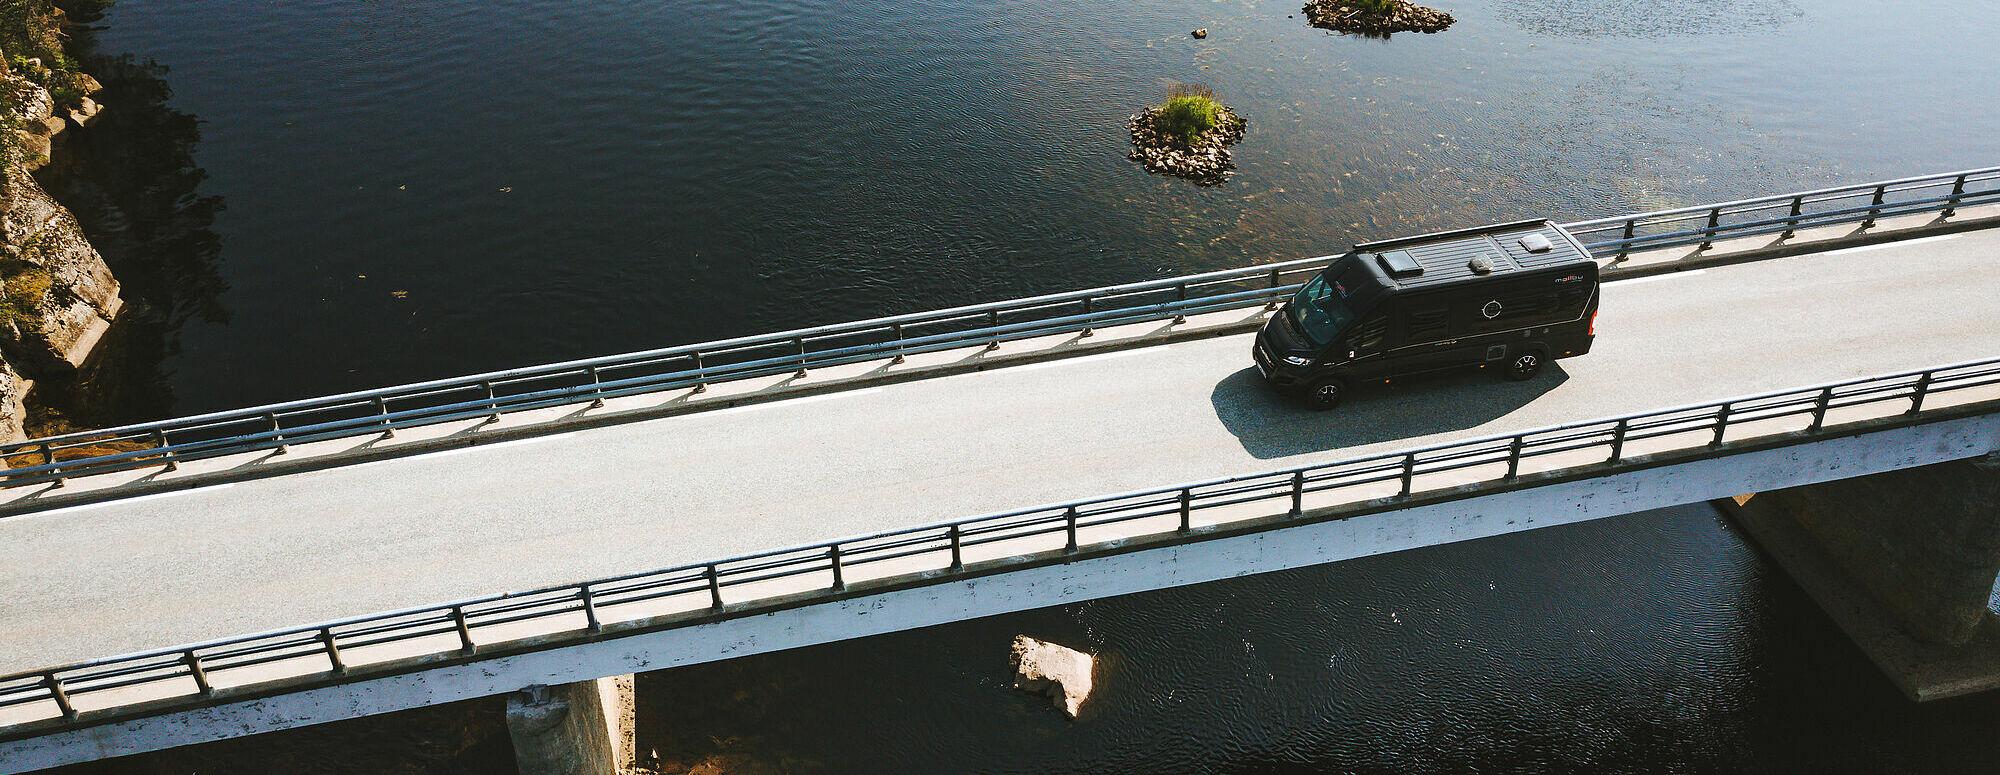 Fahraufnahme aus der Vogelperspektive von einem Malibu Van auf einer Brücke über einem See